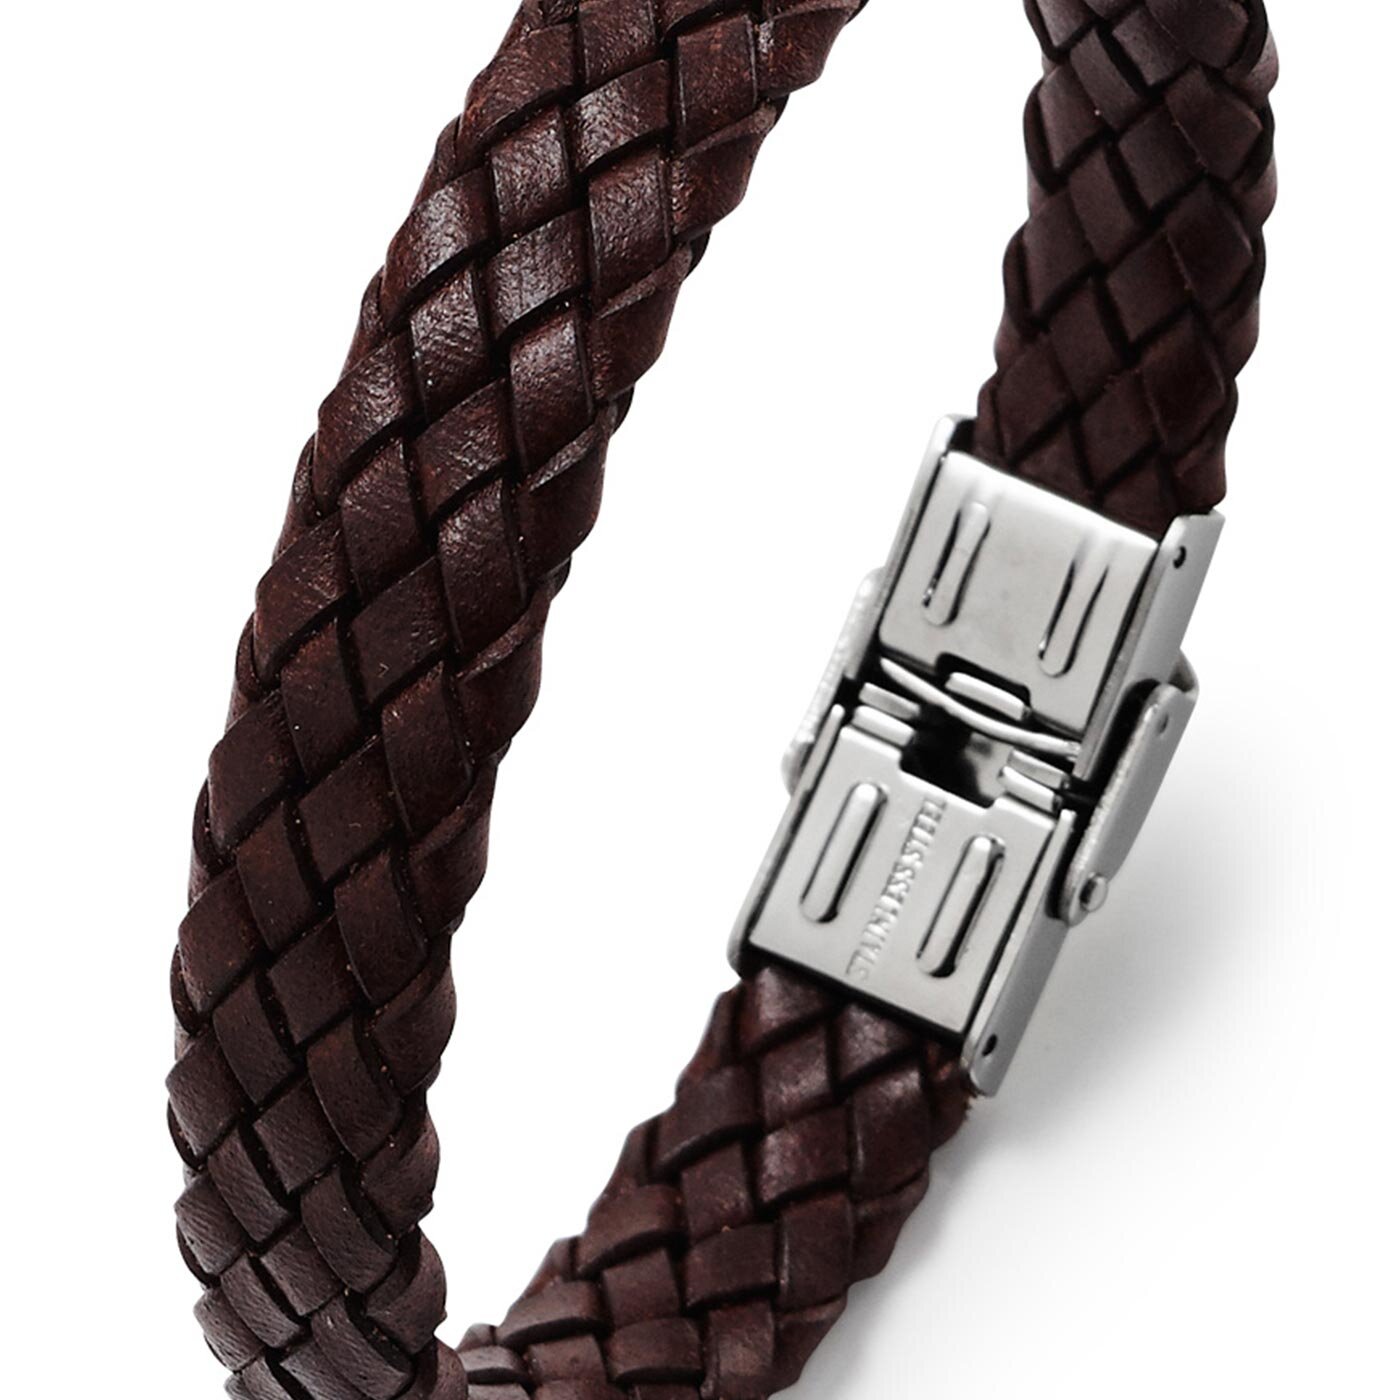 Braided brown bracelet